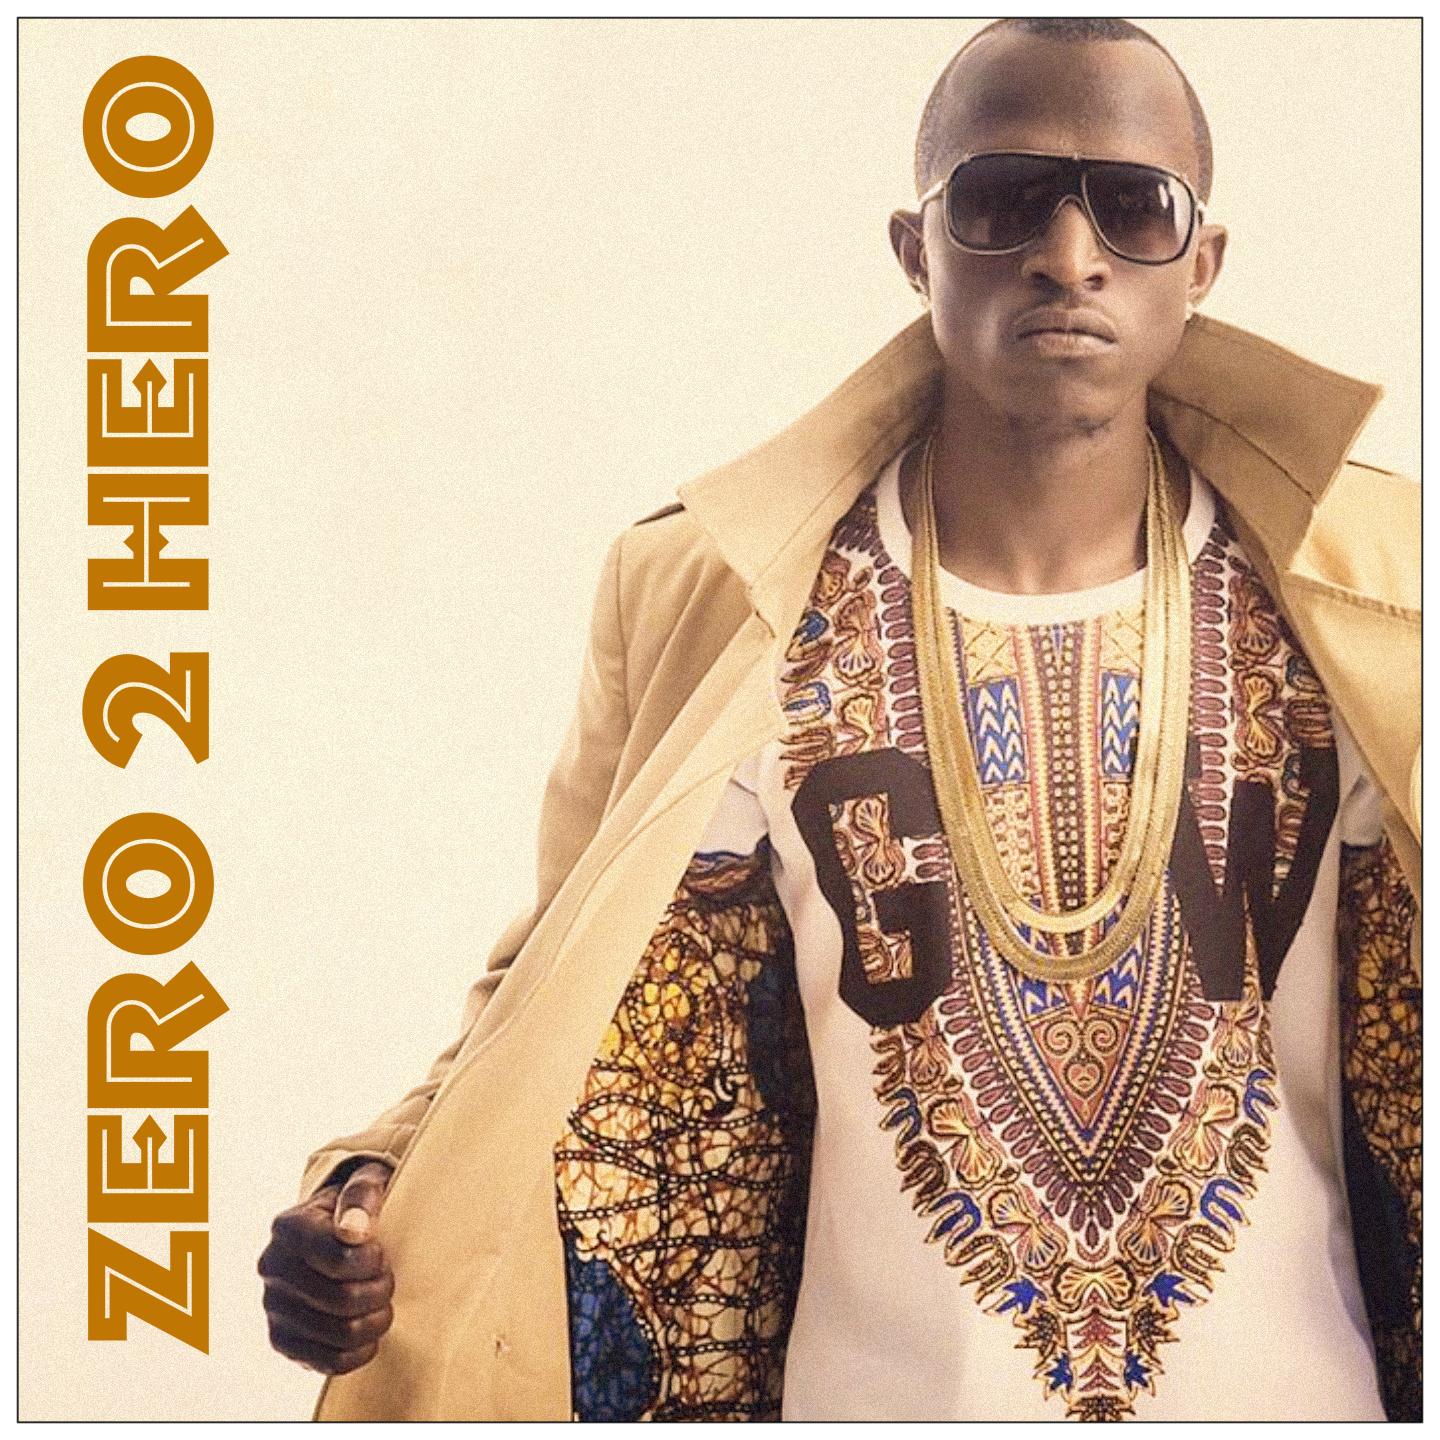 Постер альбома Zero 2 Hero